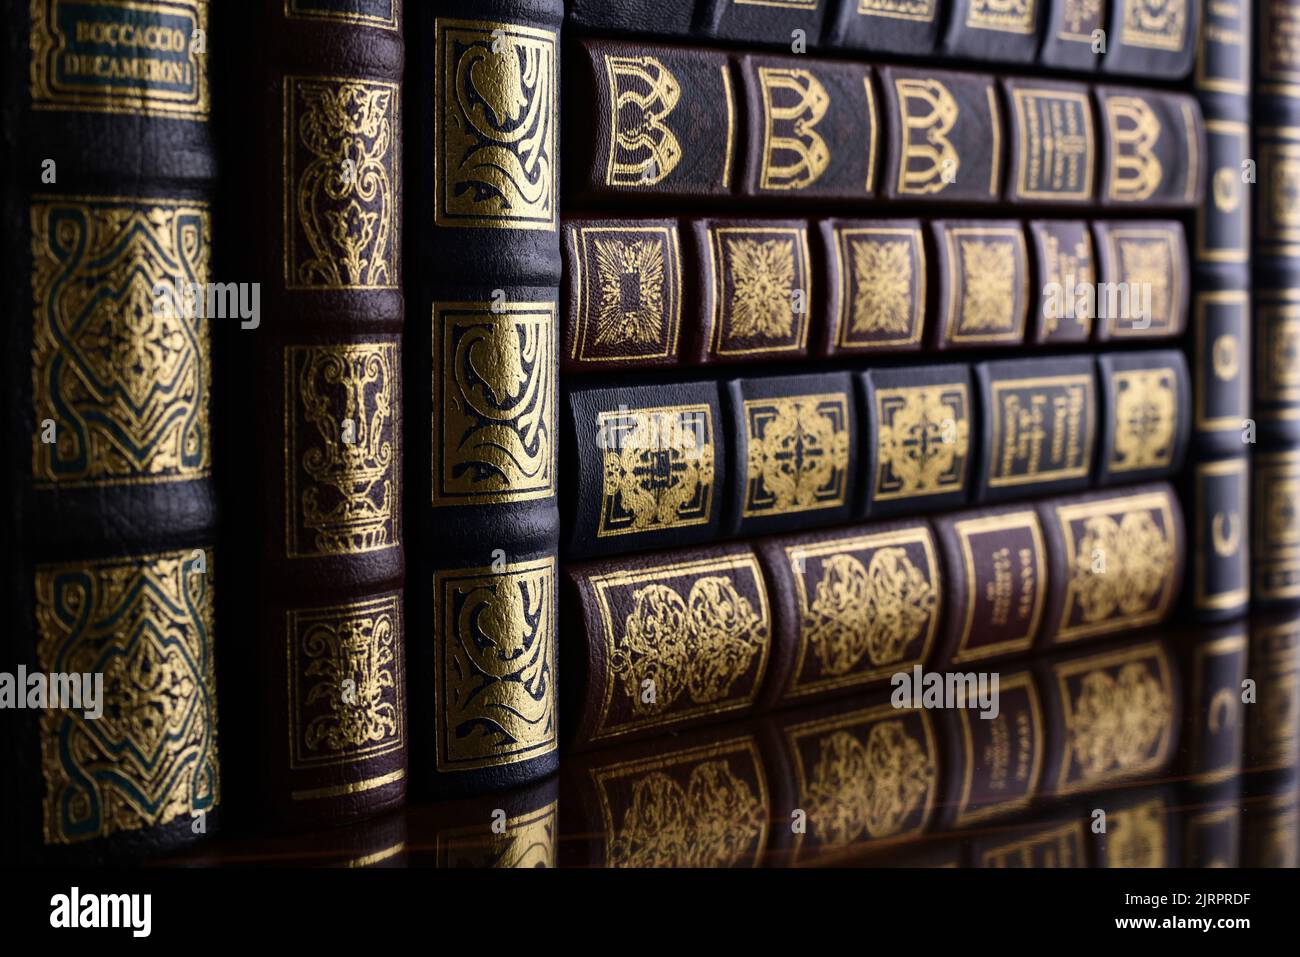 Detalle de unos libros clásicos en la estantería de una biblioteca Stock Photo